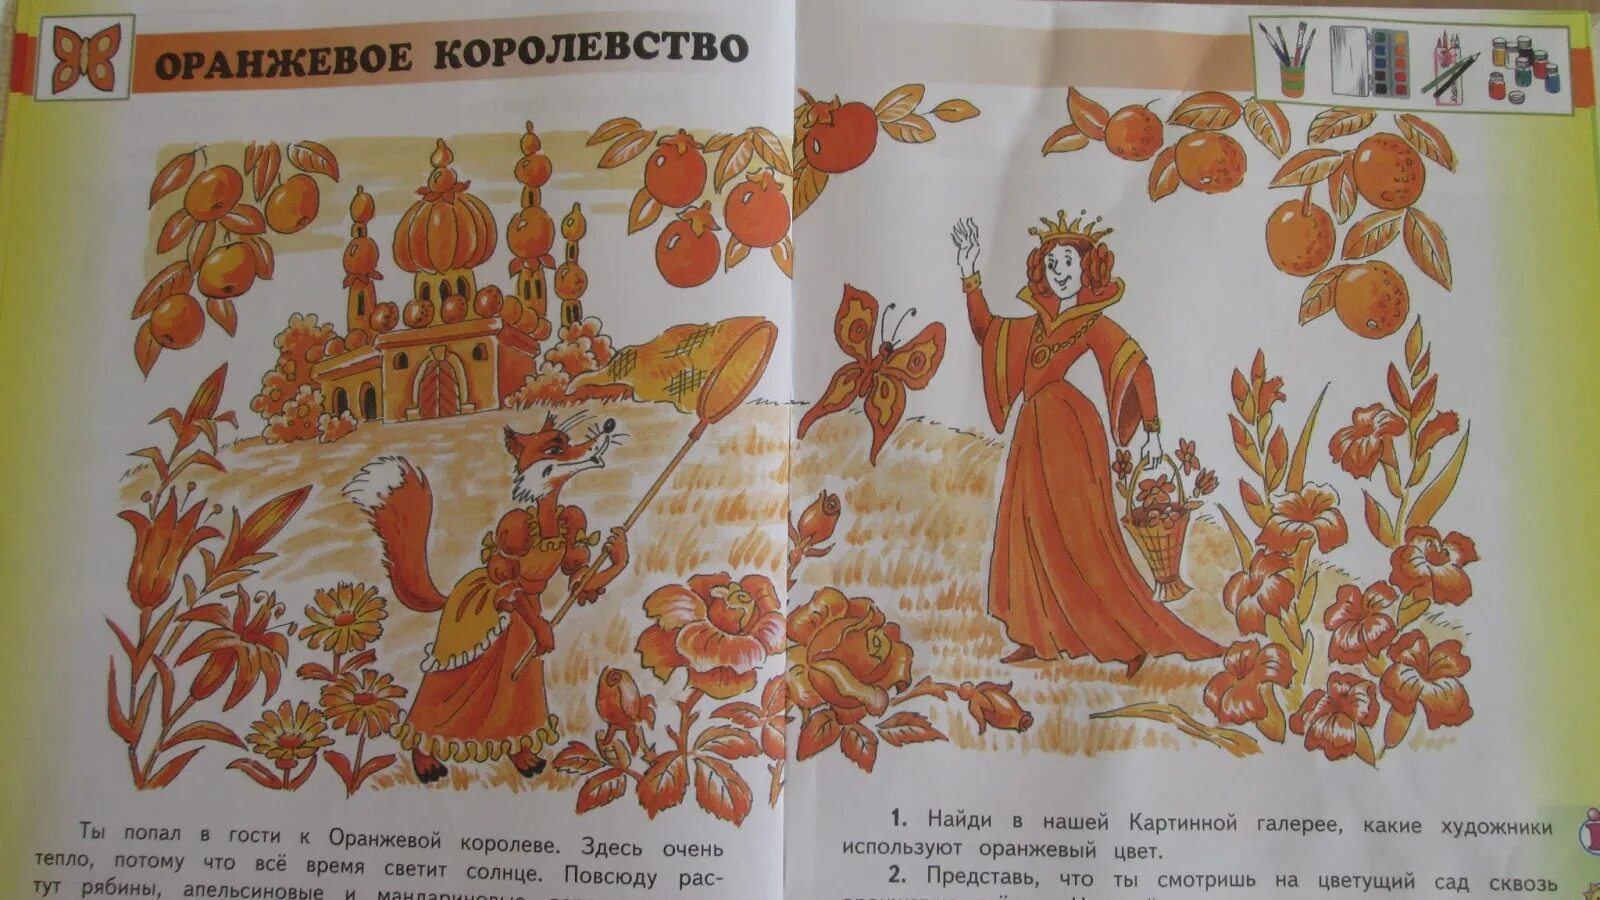 Над бумажным над листом. Оранжевое королевство. Оранжевое царство рисунок. Апельсиновое королевство. Оранжевая Королева.